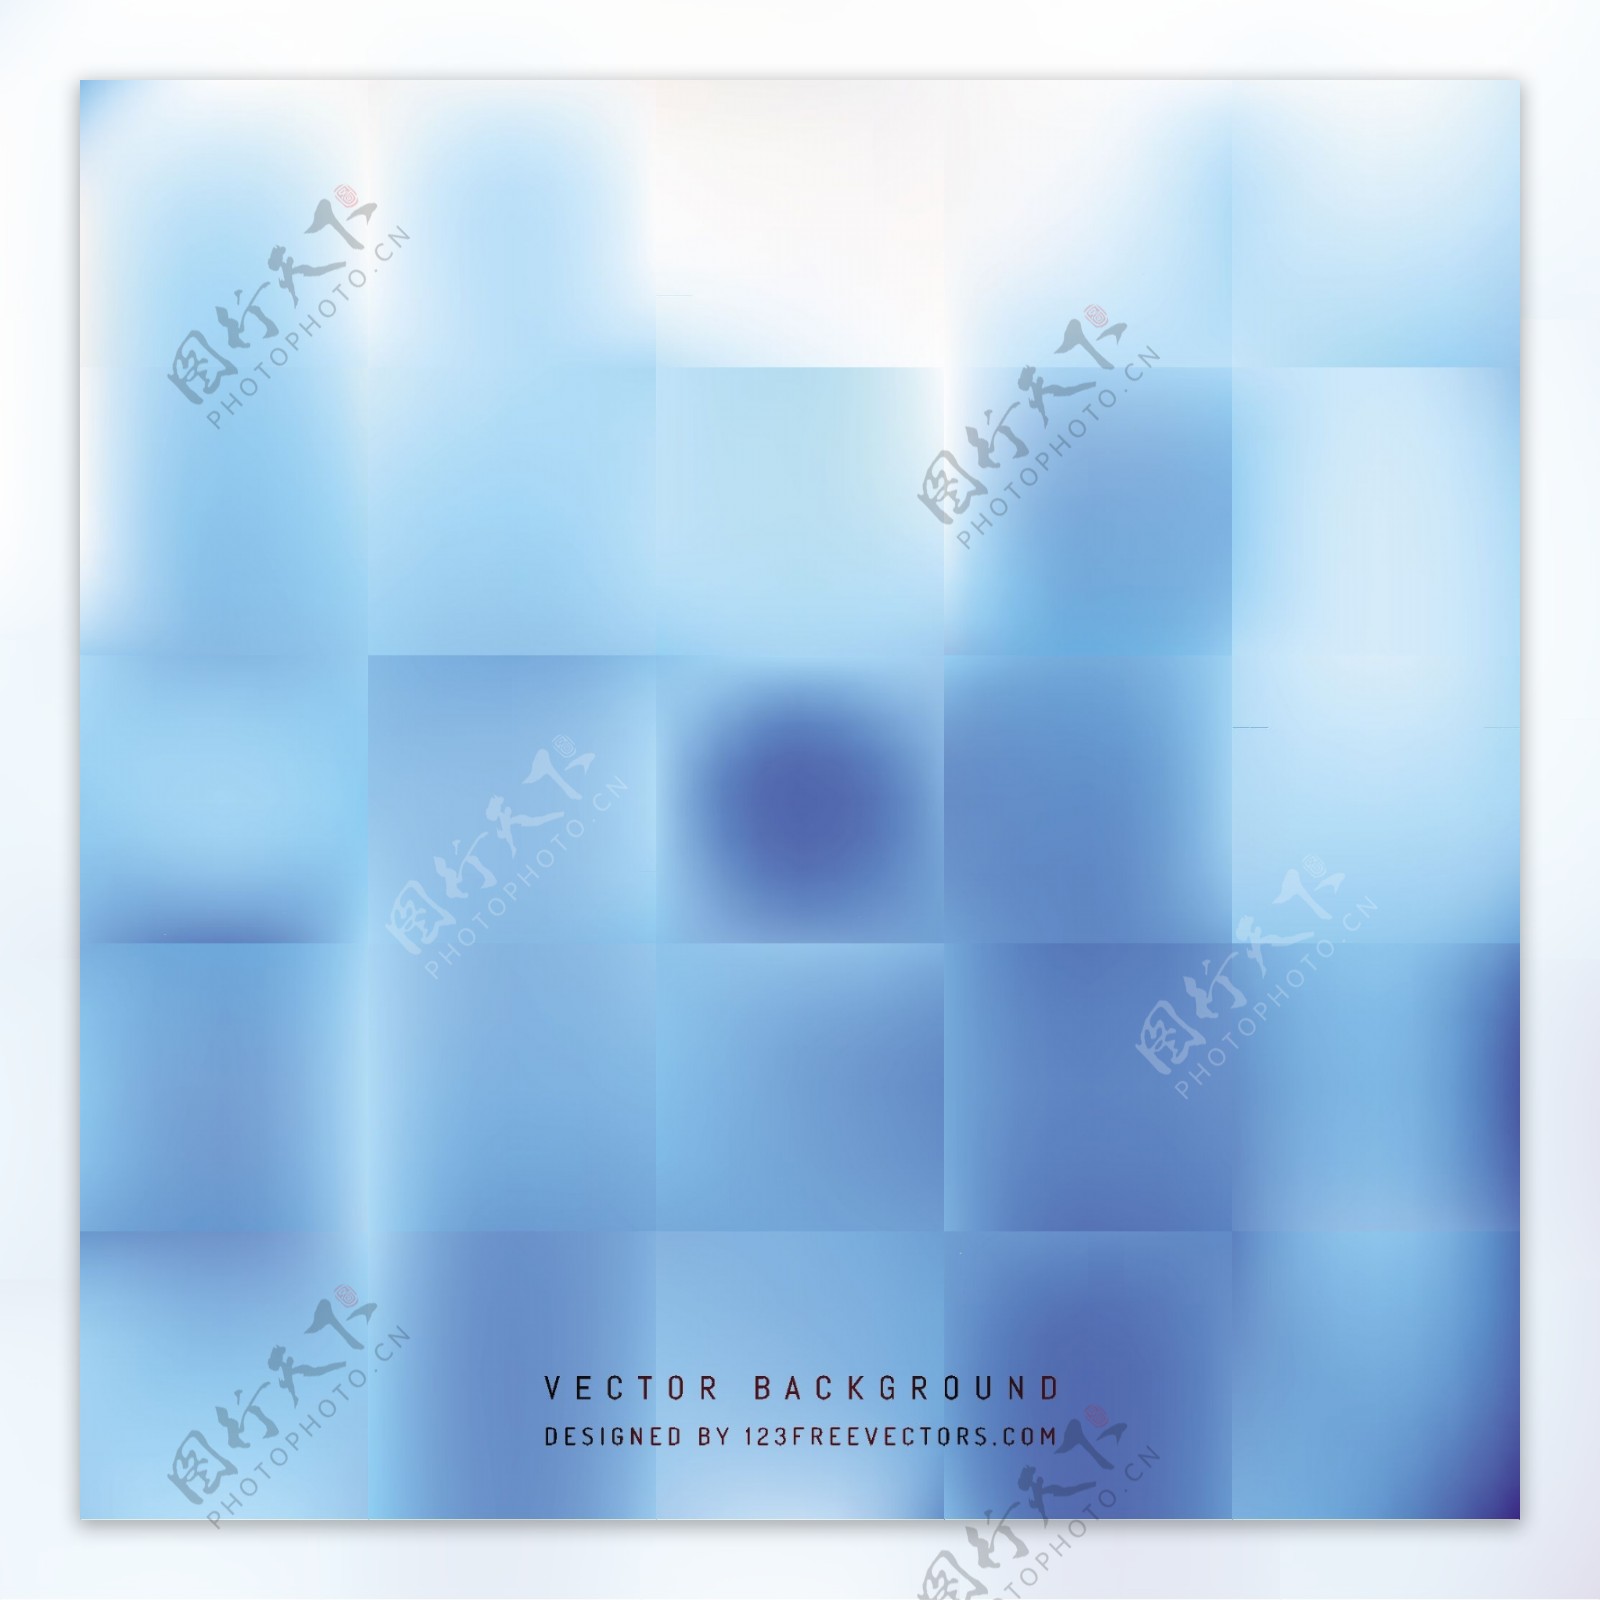 抽象蓝色正方形背景模板